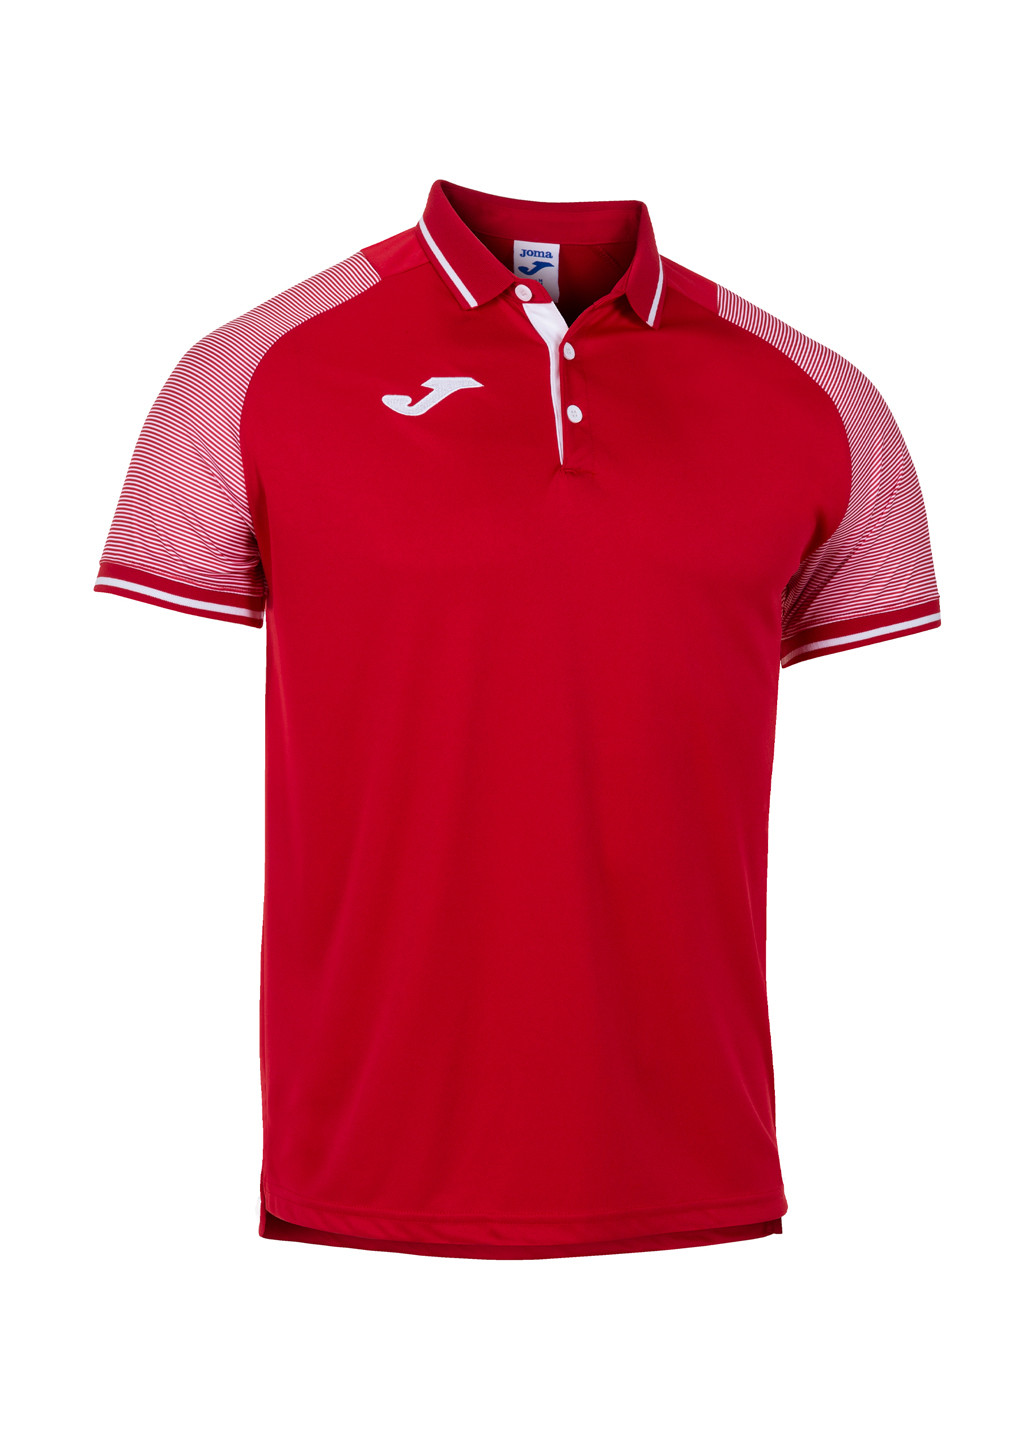 Красная футболка-поло для мужчин Joma в полоску